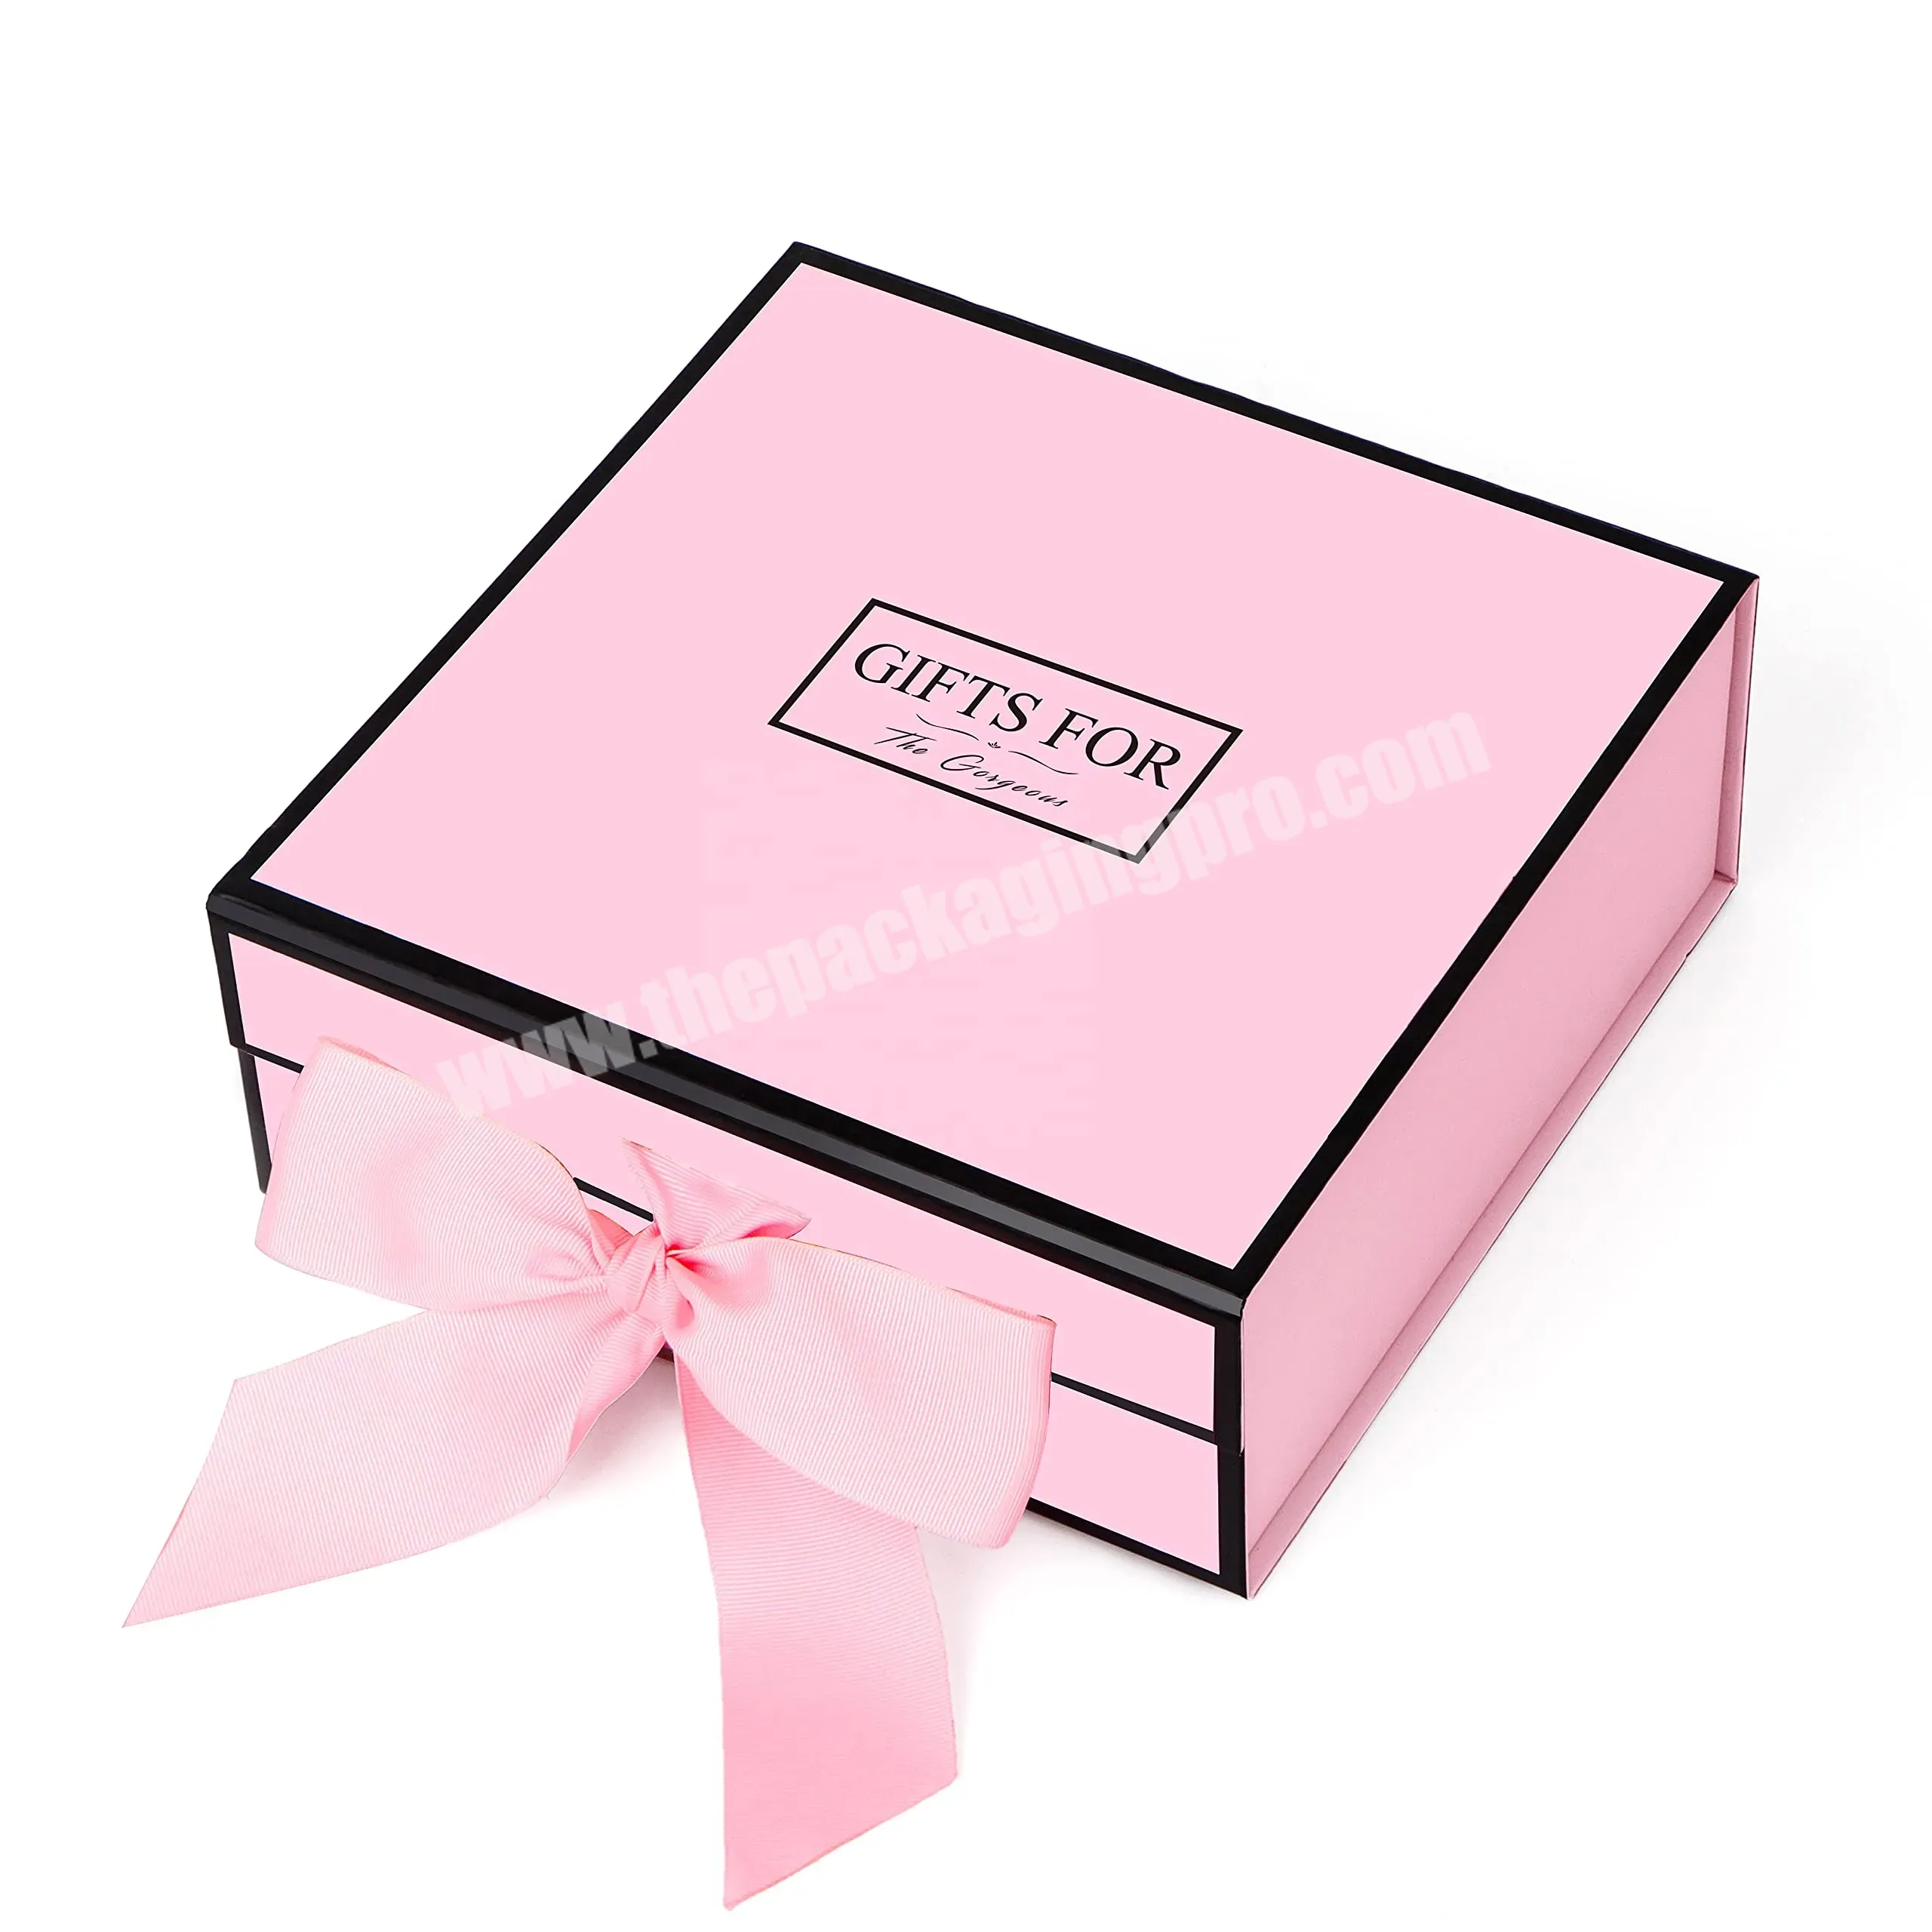 2 Colors Satin Ribbon Bridesmaids Wedding Gifts Sets Packaging For Guests Box - Buy Bridesmaids Gift Sets Box,Wedding Gifts For Guests Box,Wedding Box Gift.